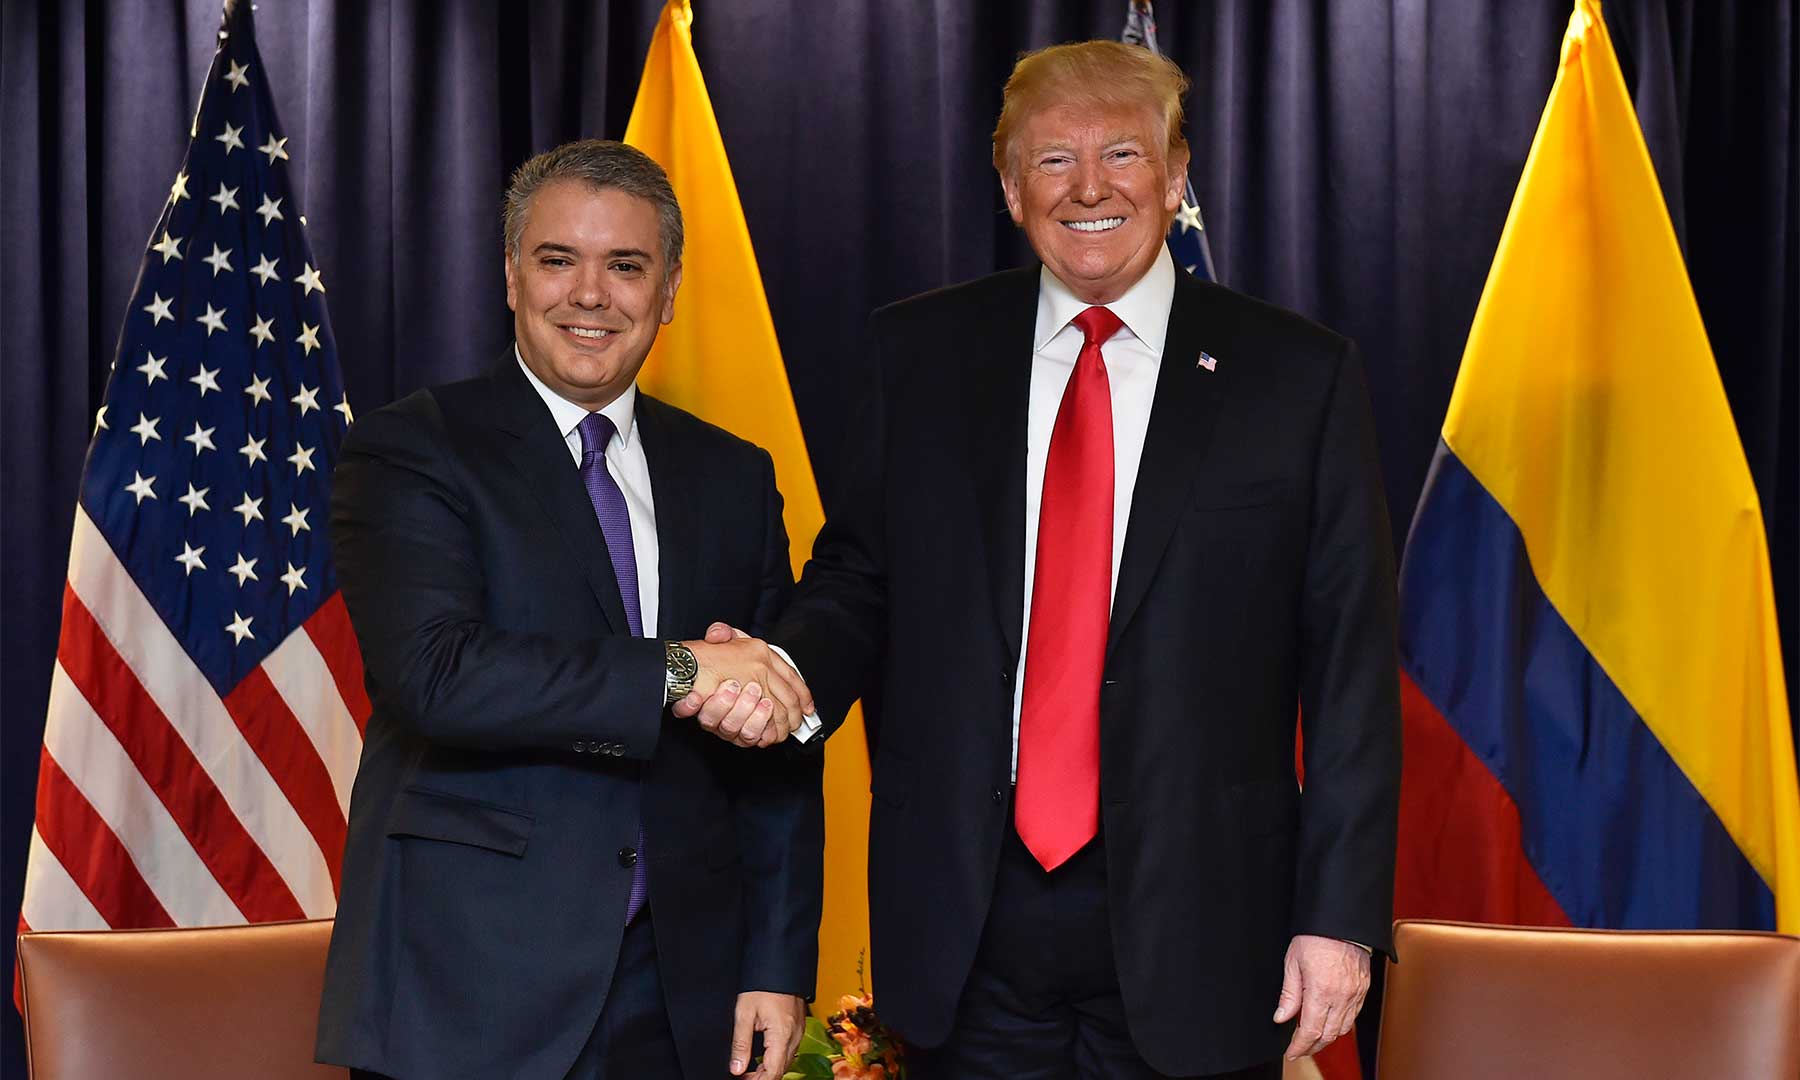 El Presidente de Colombia, Iván Duque, realizará visita oficial a los Estados Unidos en compañía del Canciller, Carlos Holmes Trujillo, para adelantar agenda de trabajo